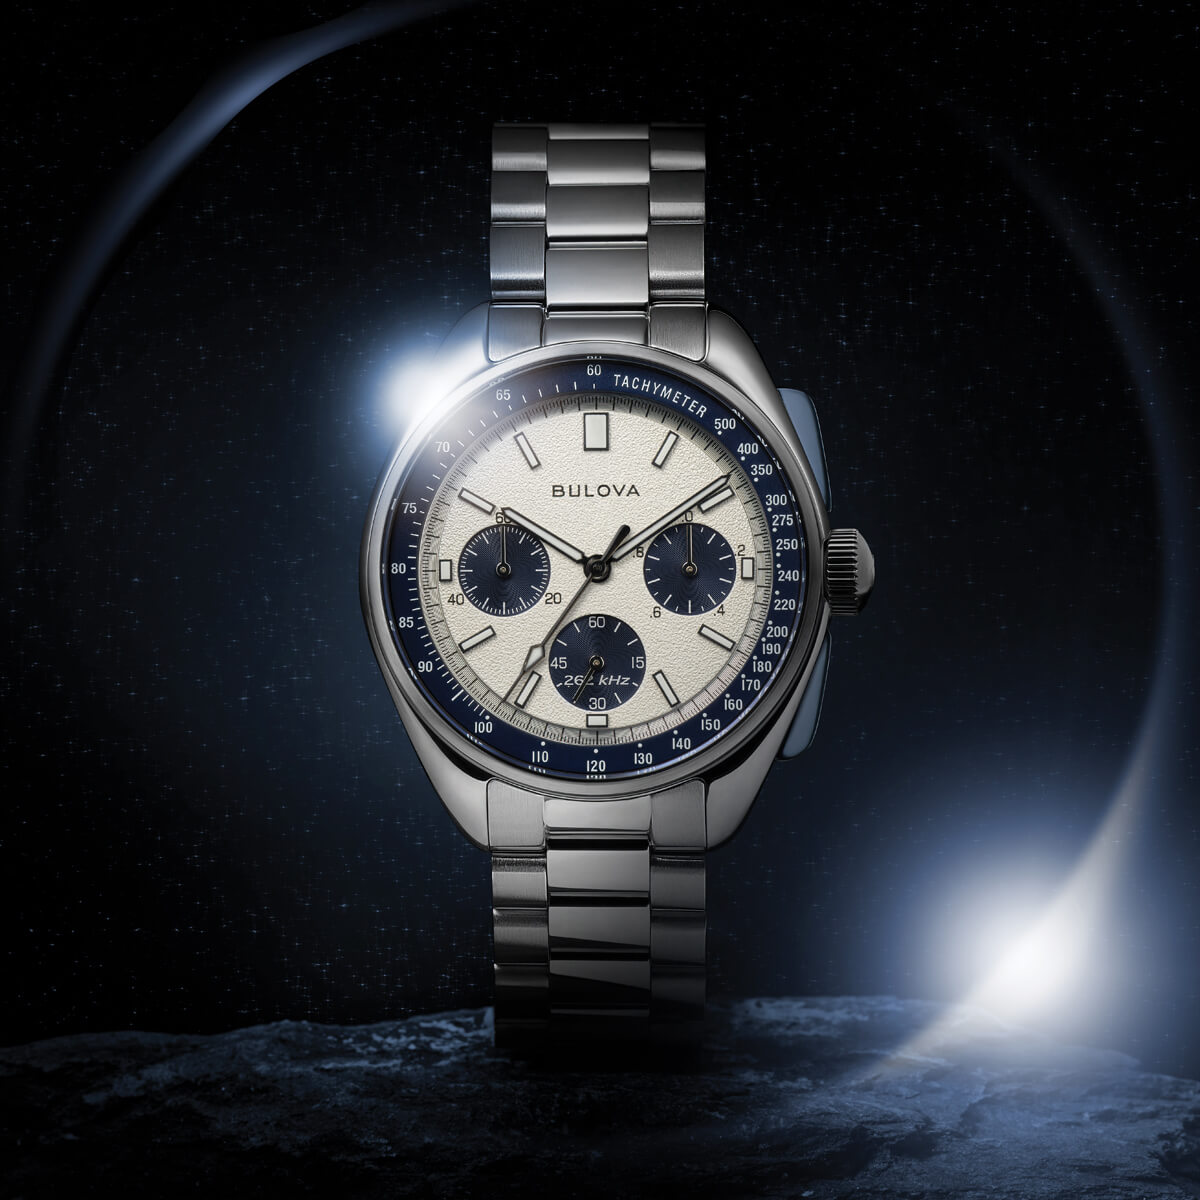 O Lunar Pilot Limited Edition, relógios Bulova em comemoração do 50.º aniversário da missão Apolo 15